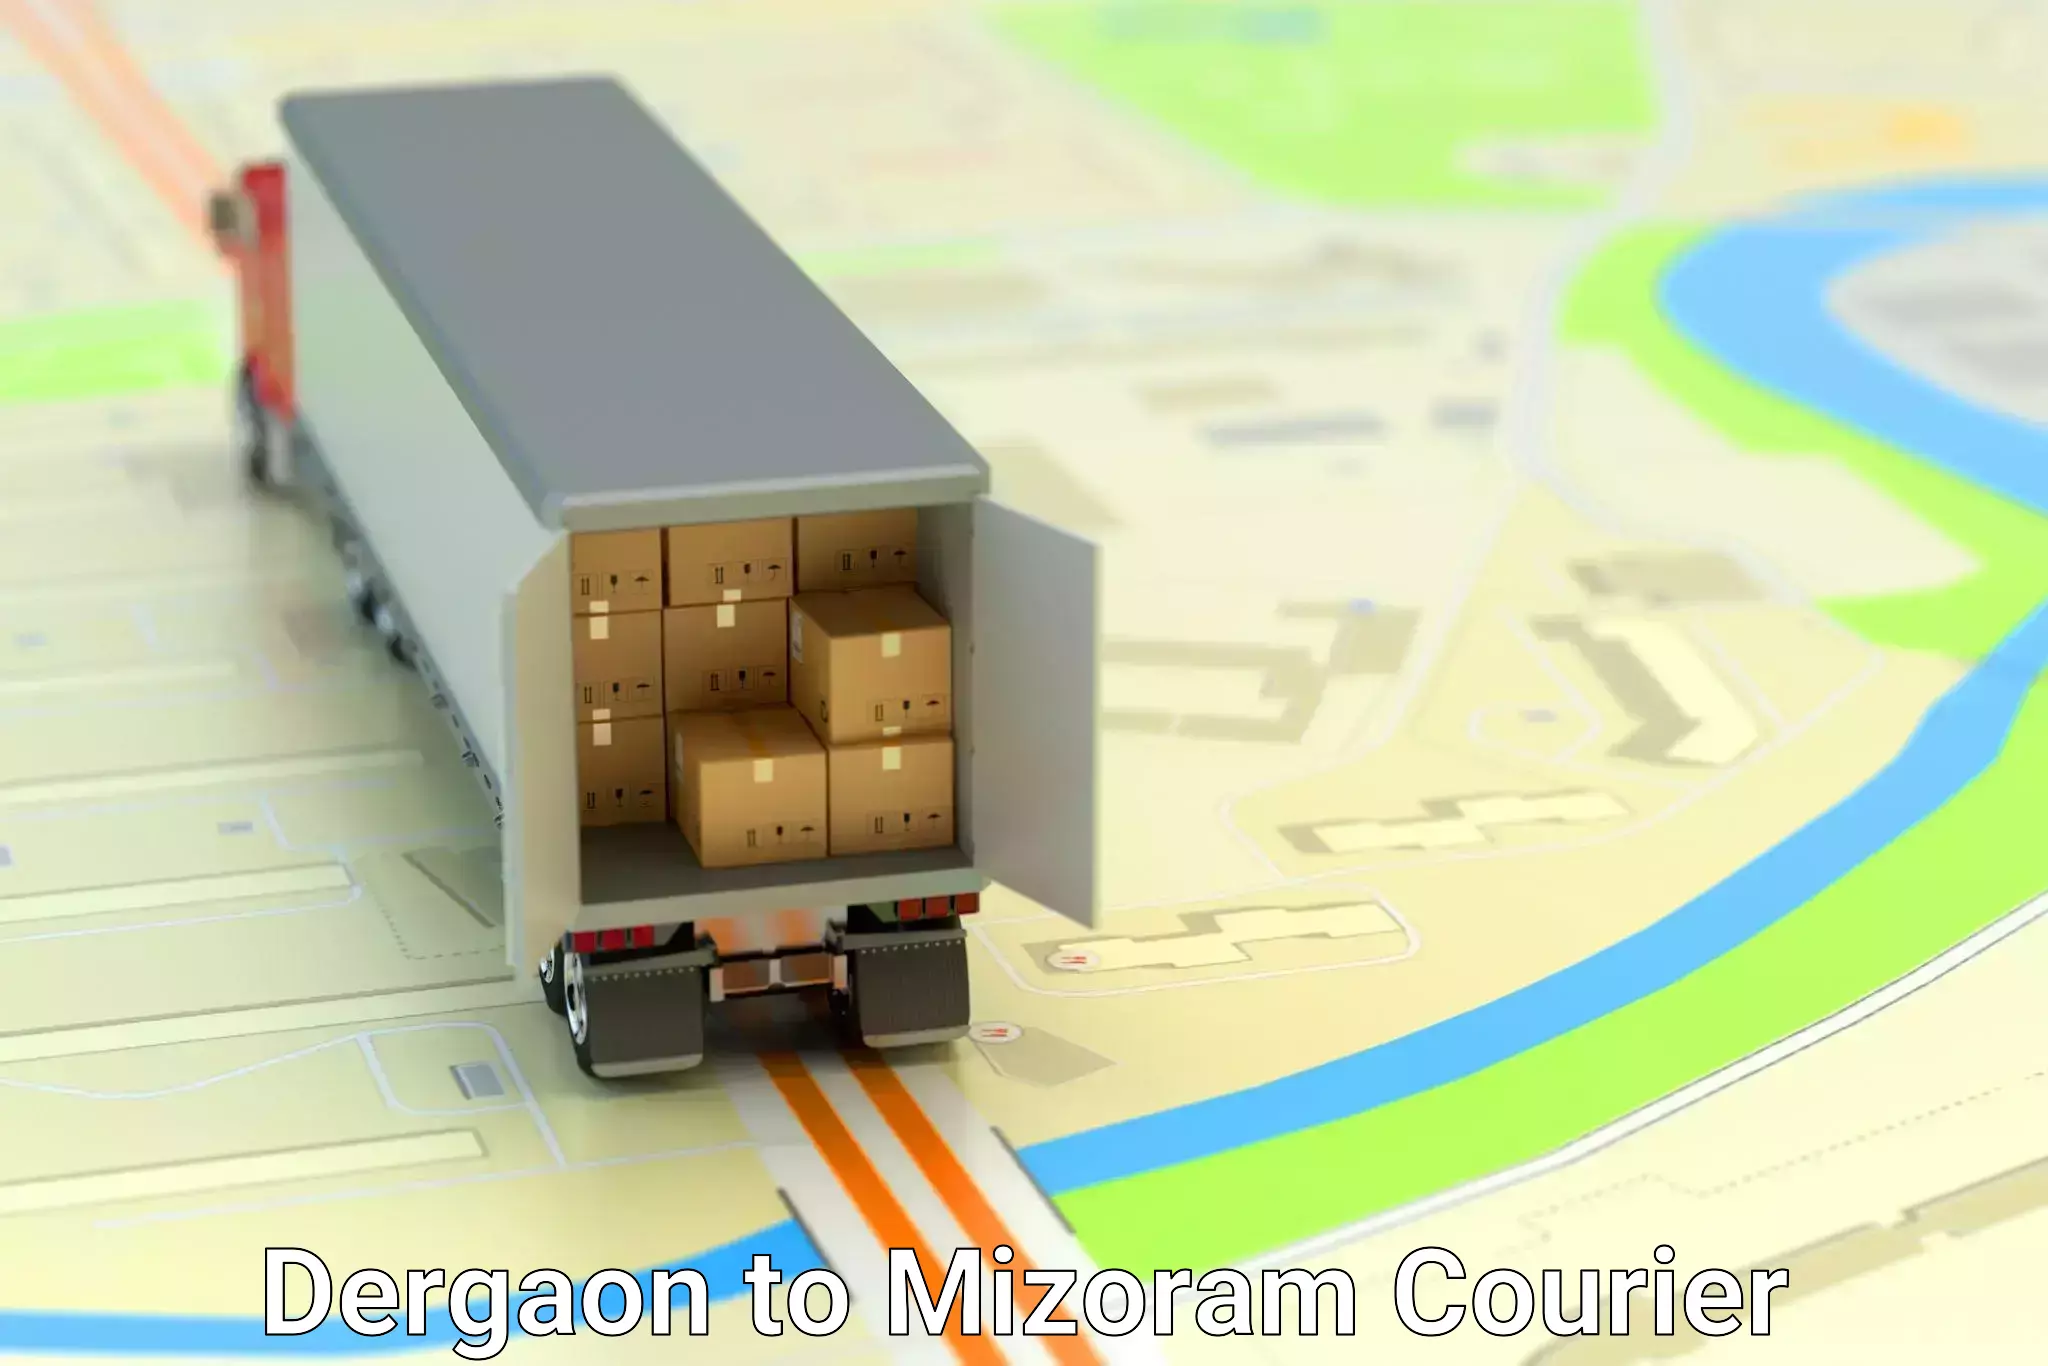 Customer-focused courier Dergaon to Mizoram